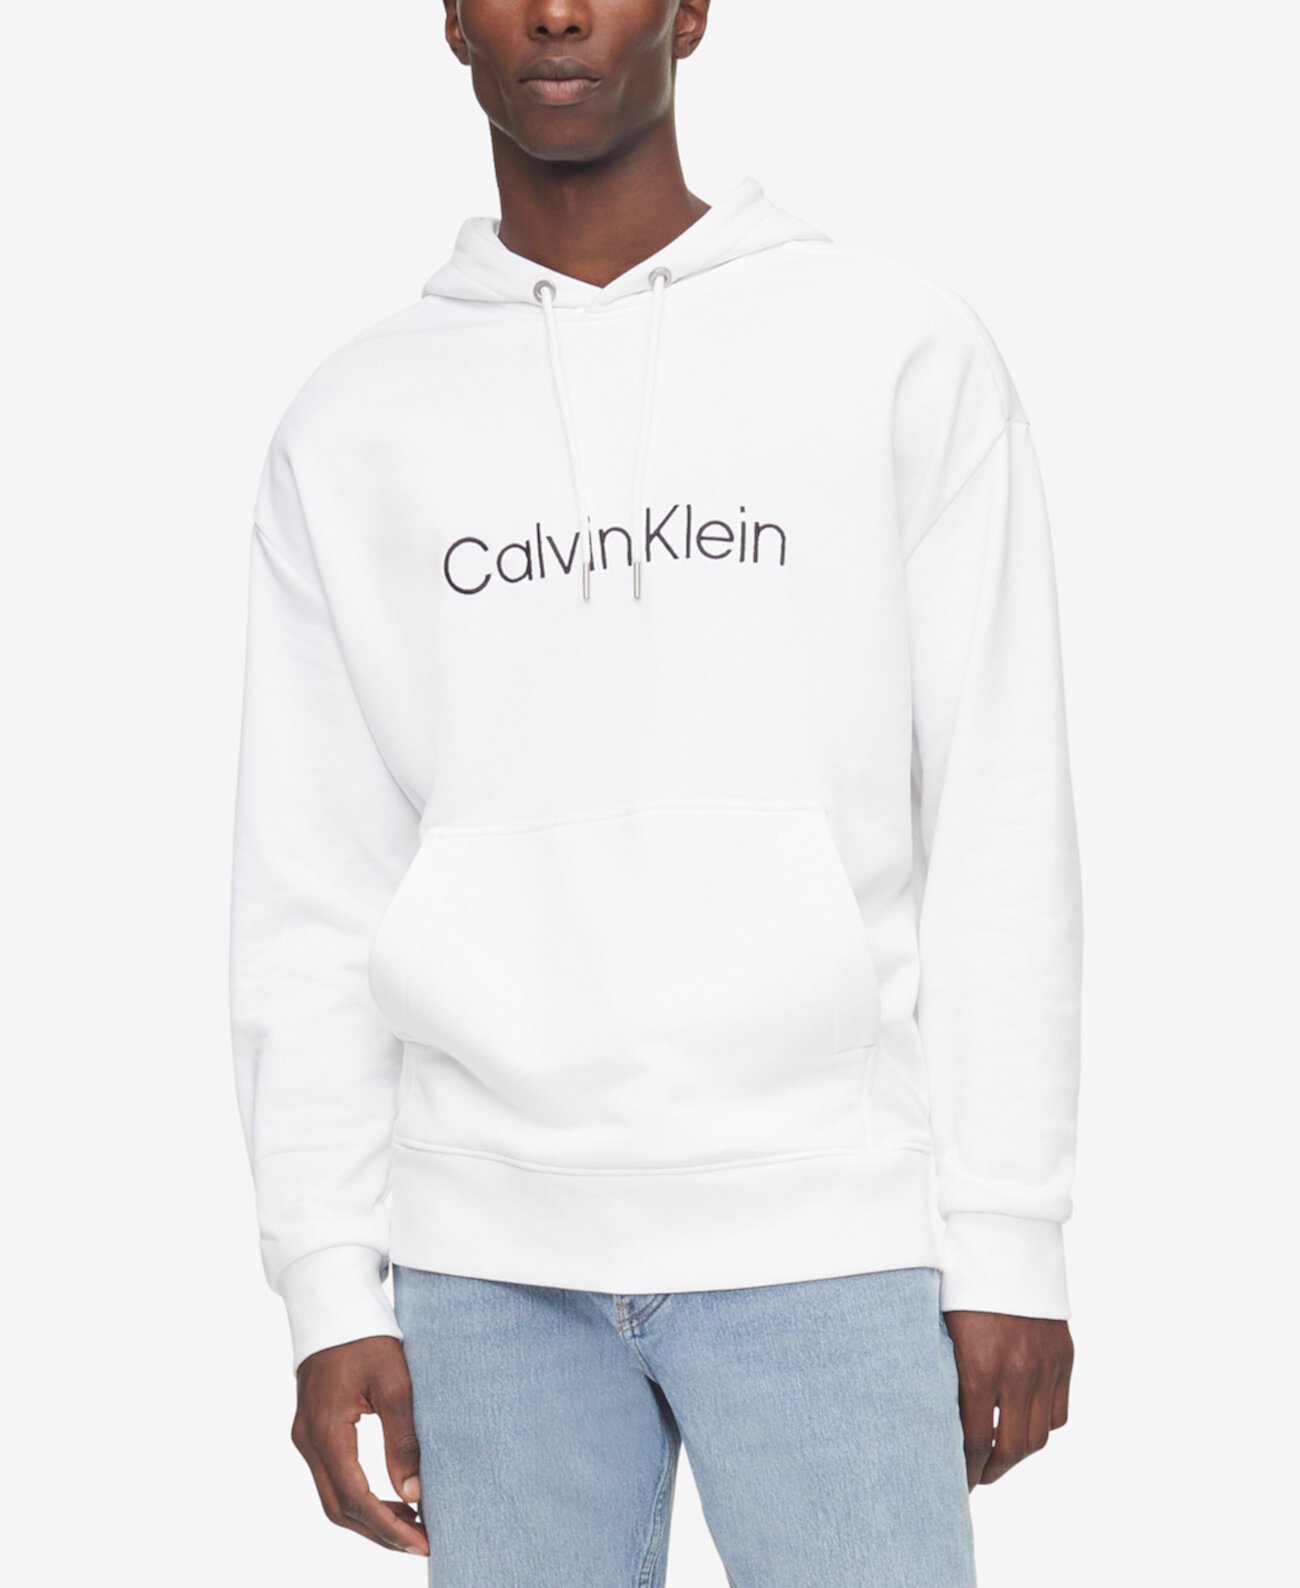 Мужская толстовка с капюшоном из френч терри с логотипом Calvin Klein